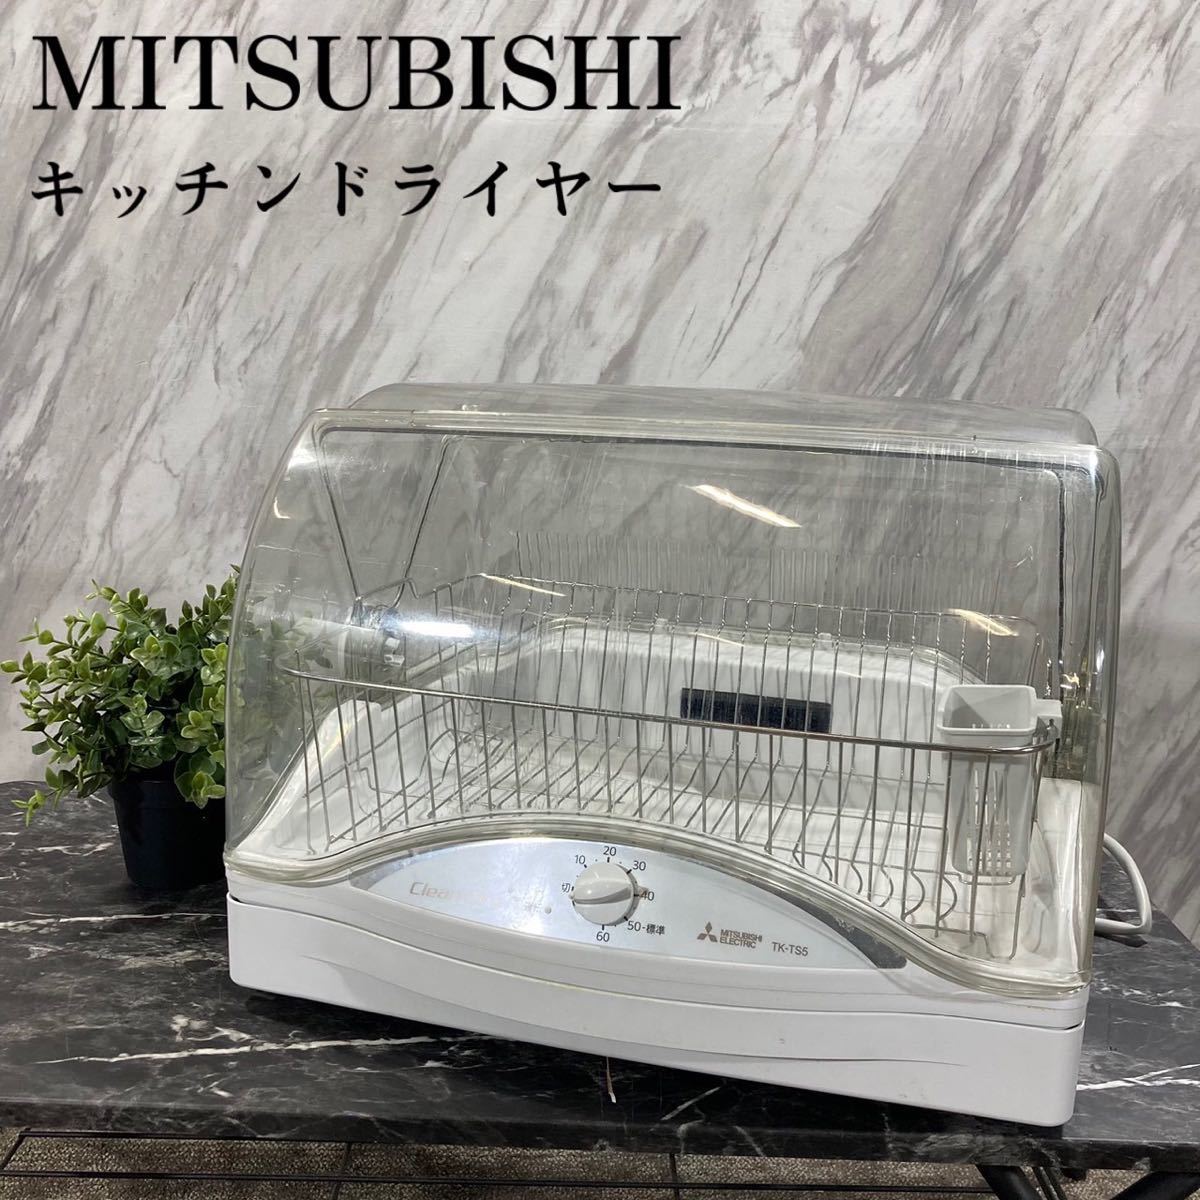 信頼 MITSUBISHI キッチンドライヤー K459 2020年製 TK-TS5-W 食器乾燥